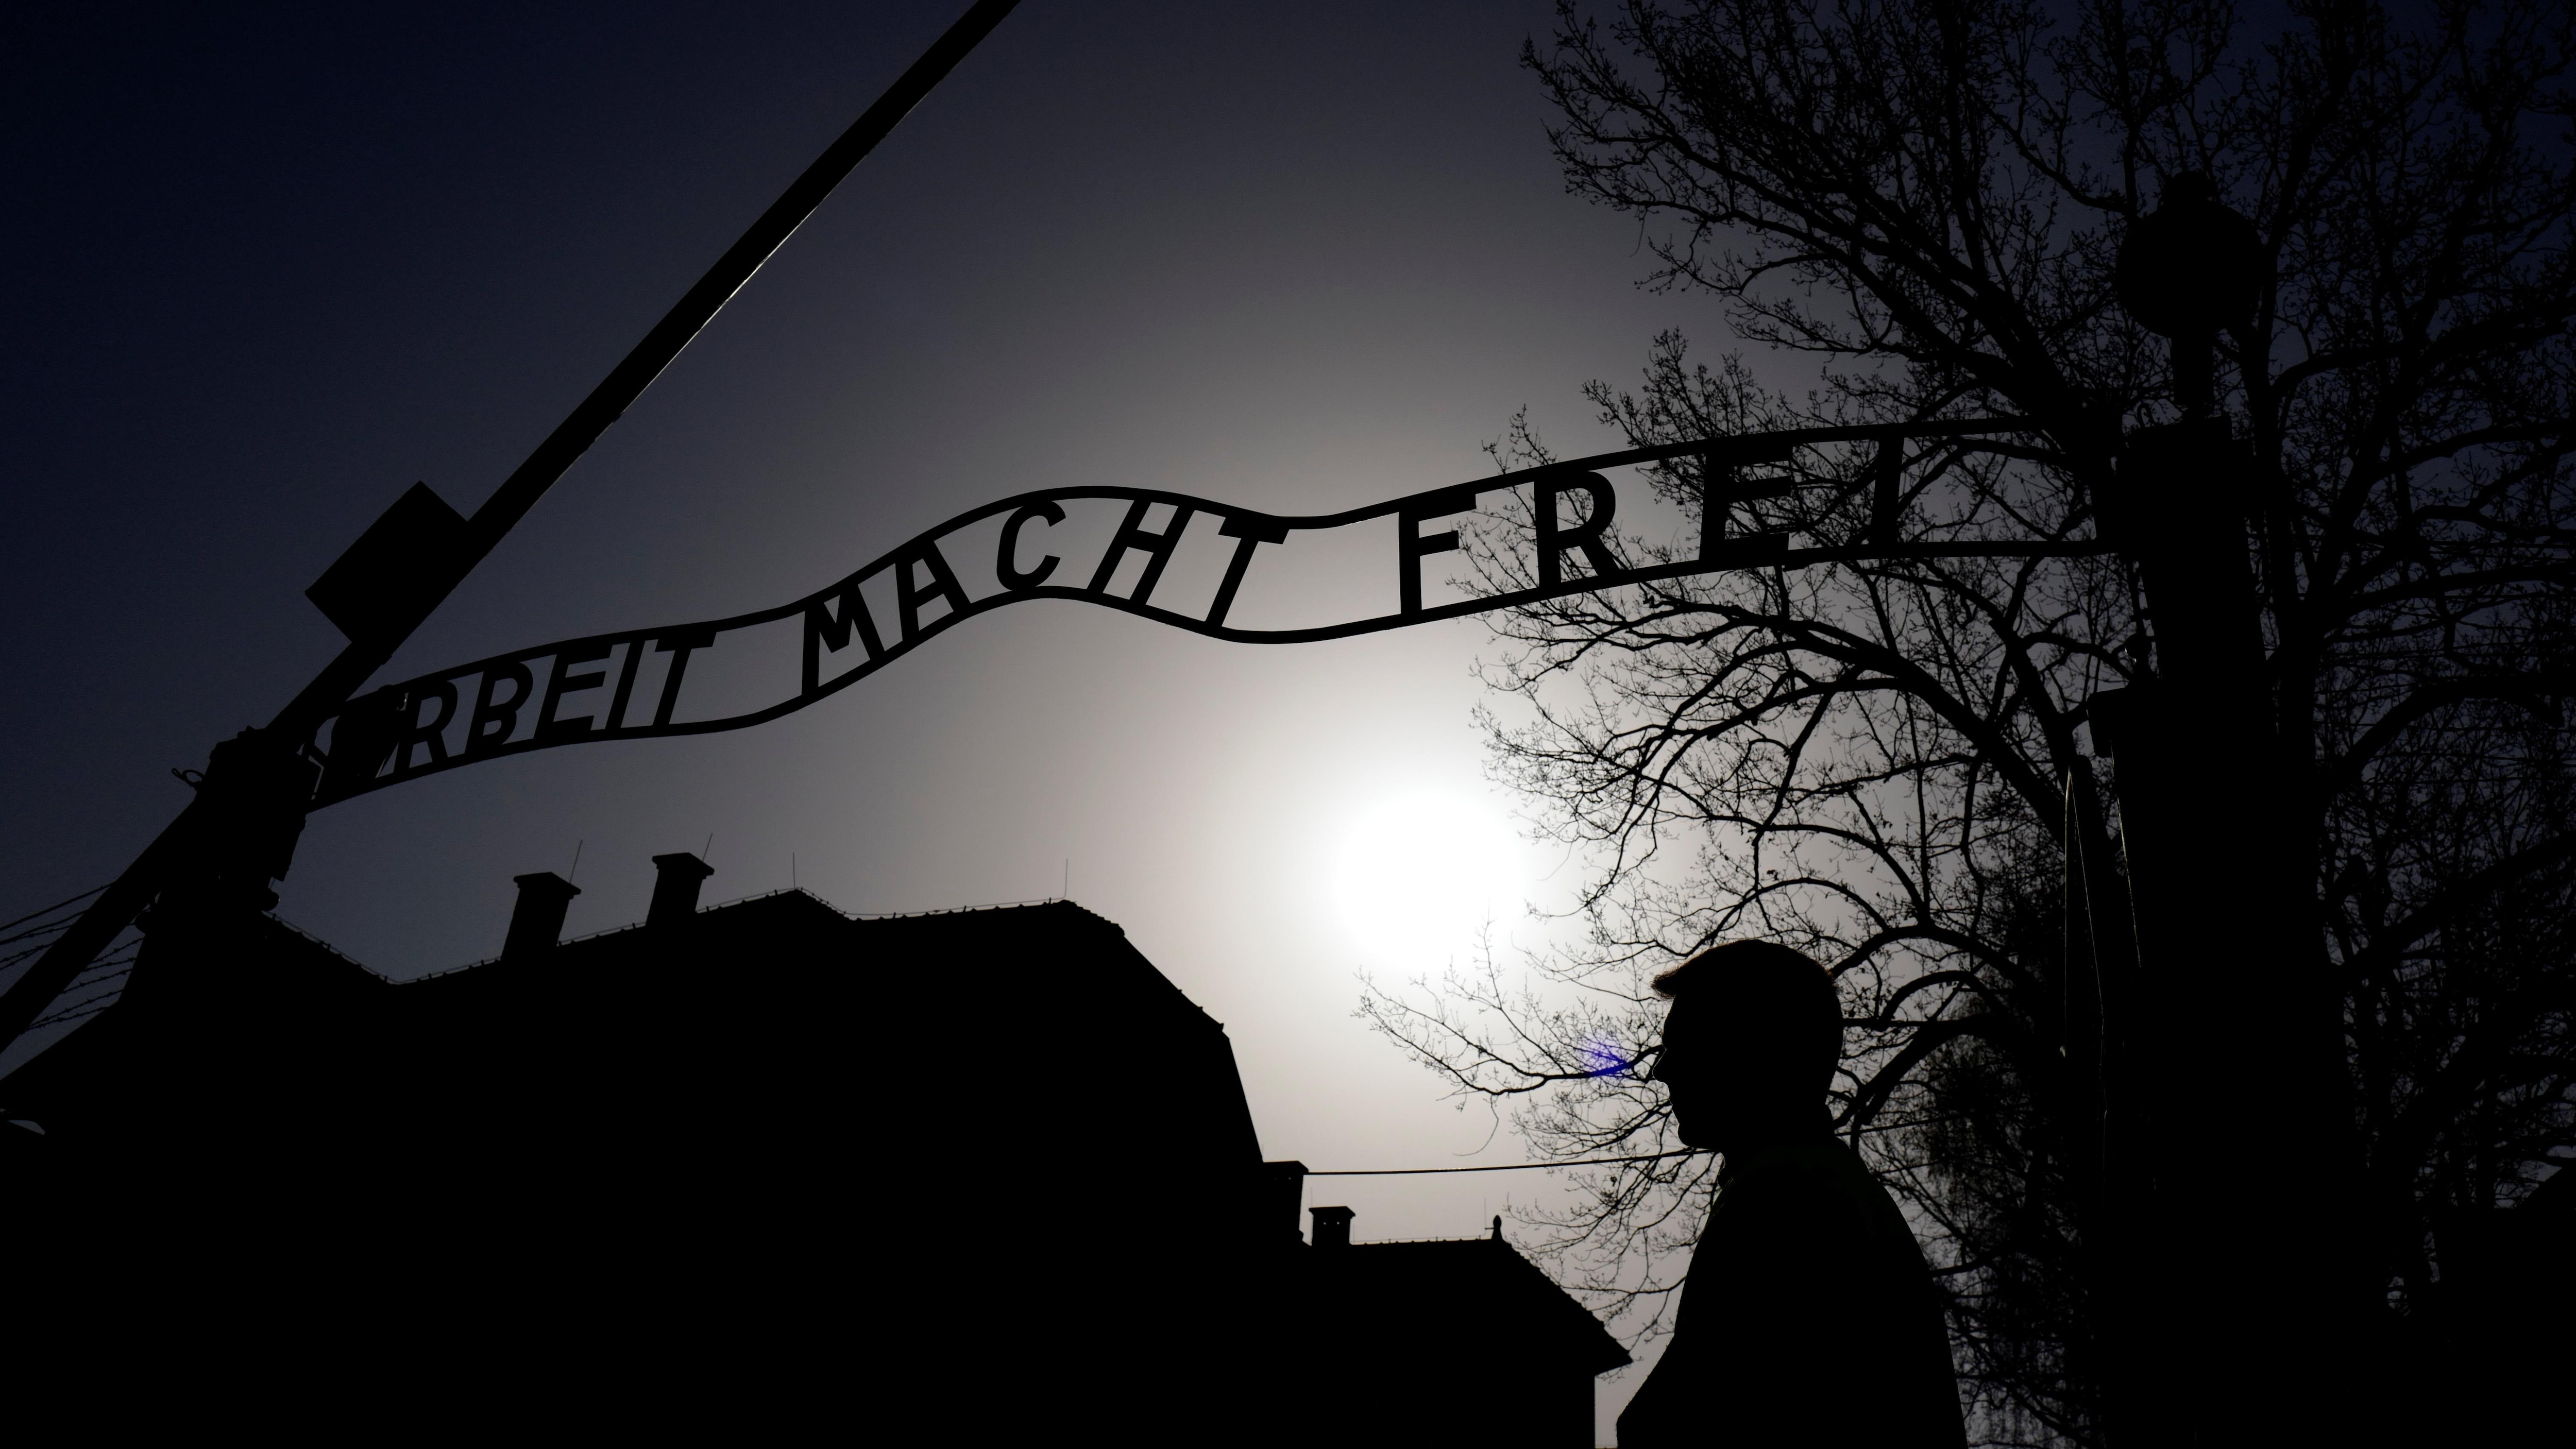 Le 78e anniversaire de la libération du camp de concentration d'Auschwitz
Le 78e anniversaire de la libération du camp de concentration d'Auschwitz